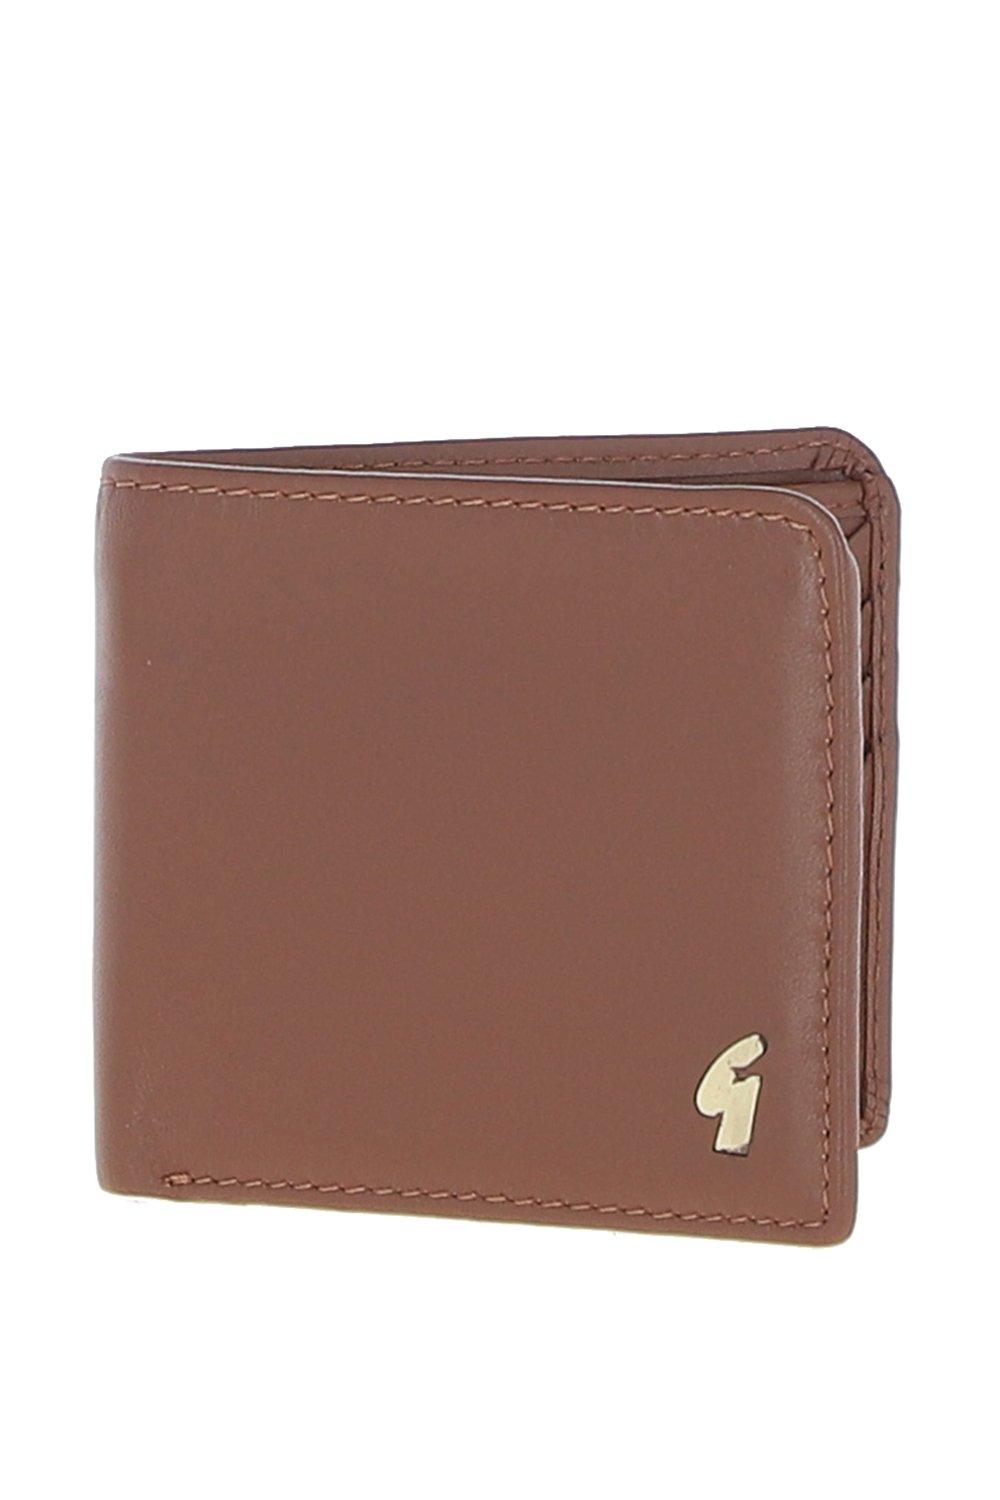 Классический кошелек '801' из натуральной кожи на 8 карточек GABICCI, коричневый